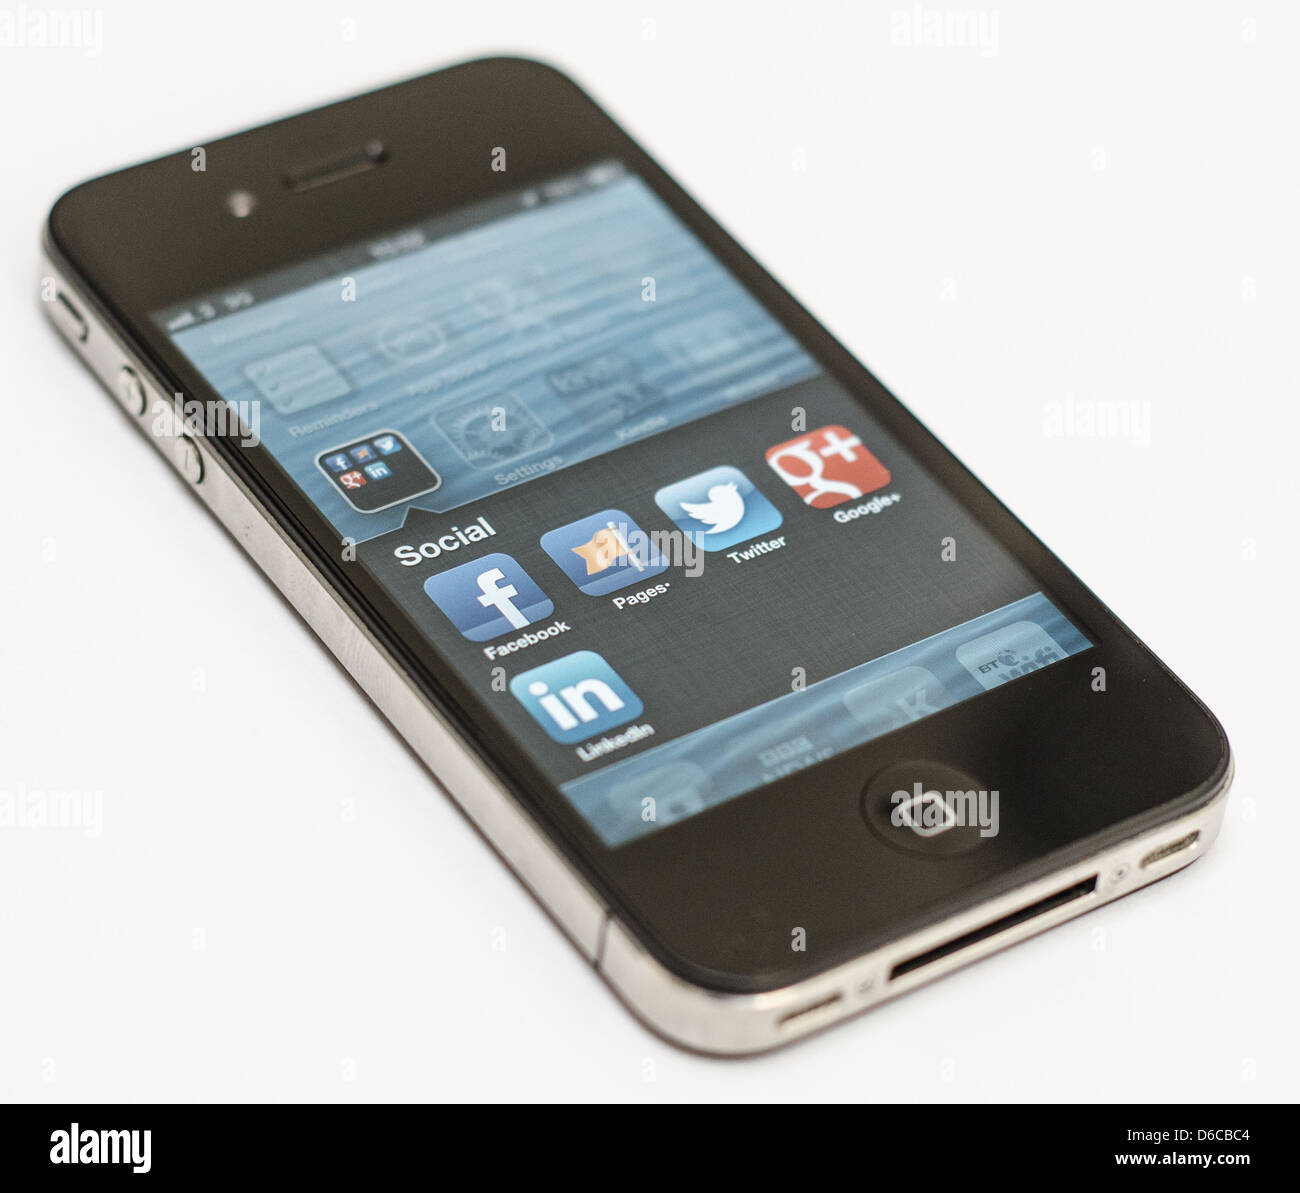 Apple iPhone auf weißem Hintergrund zeigen eine Auswahl der social Media-Anwendungen - Facebook, Twitter, Google +, LinkedIn. Stockfoto